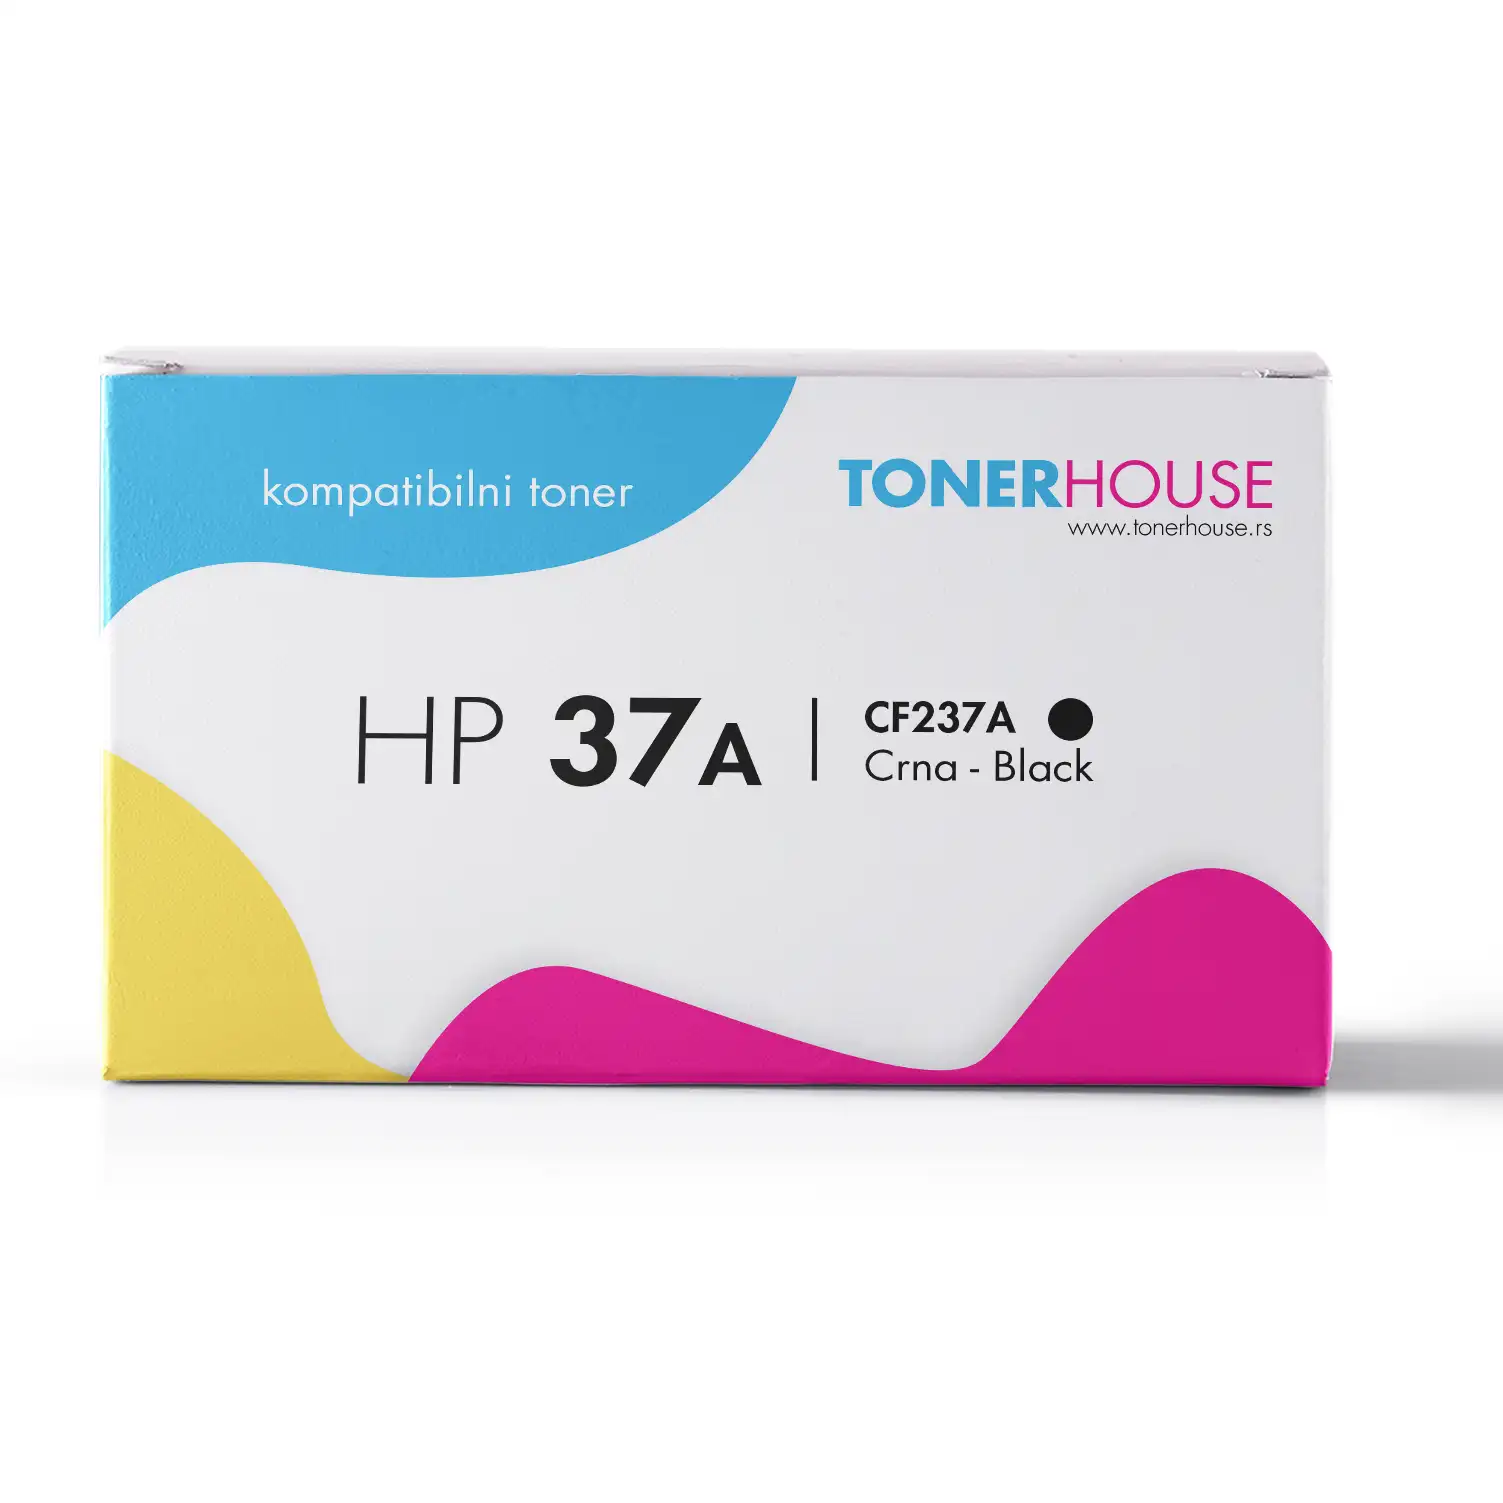 HP 37A Toner Kompatibilni / CF237A